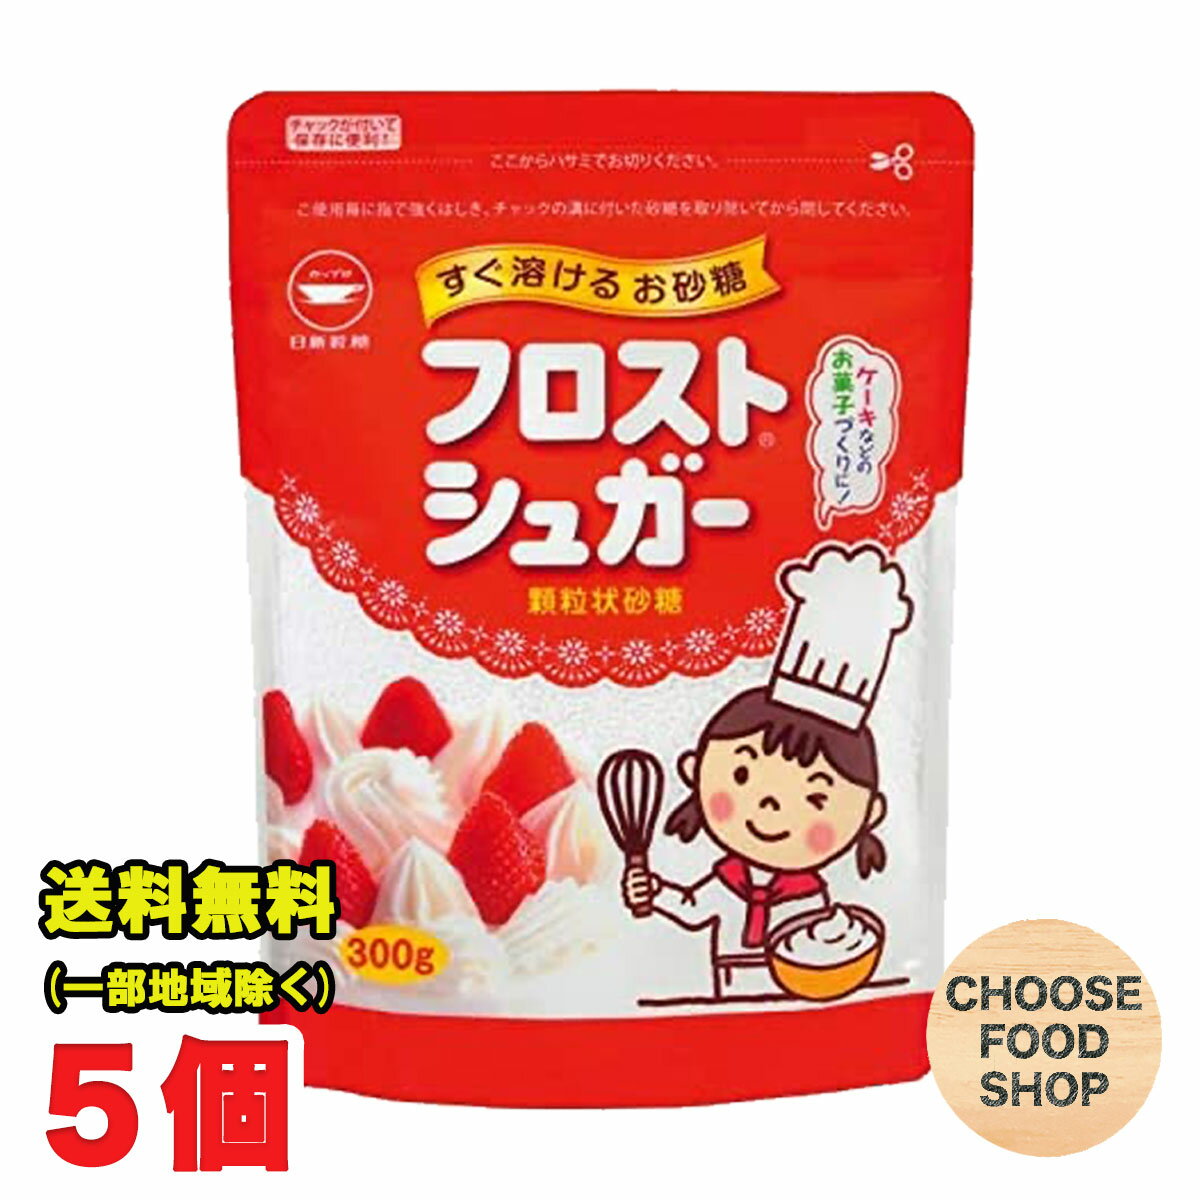 フロストシュガー 300g 5袋セット カップ印 日新製糖 製菓 生クリーム 砂糖 スイーツ 送料無料（北海道・東北・沖縄除く）